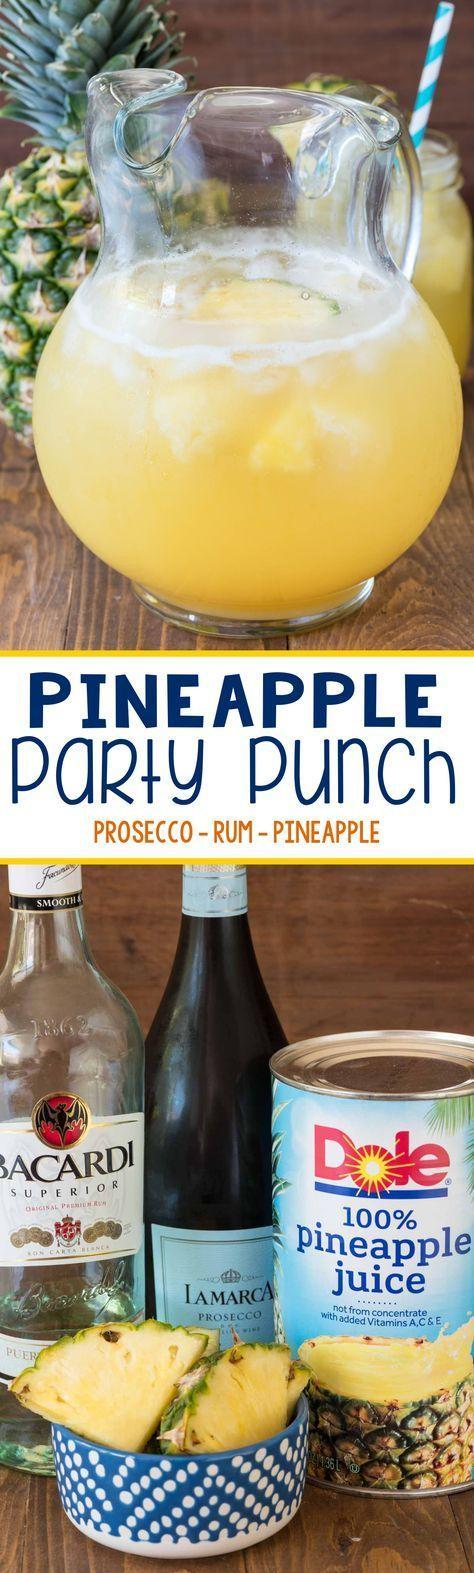 زفاف - Pineapple Party Punch